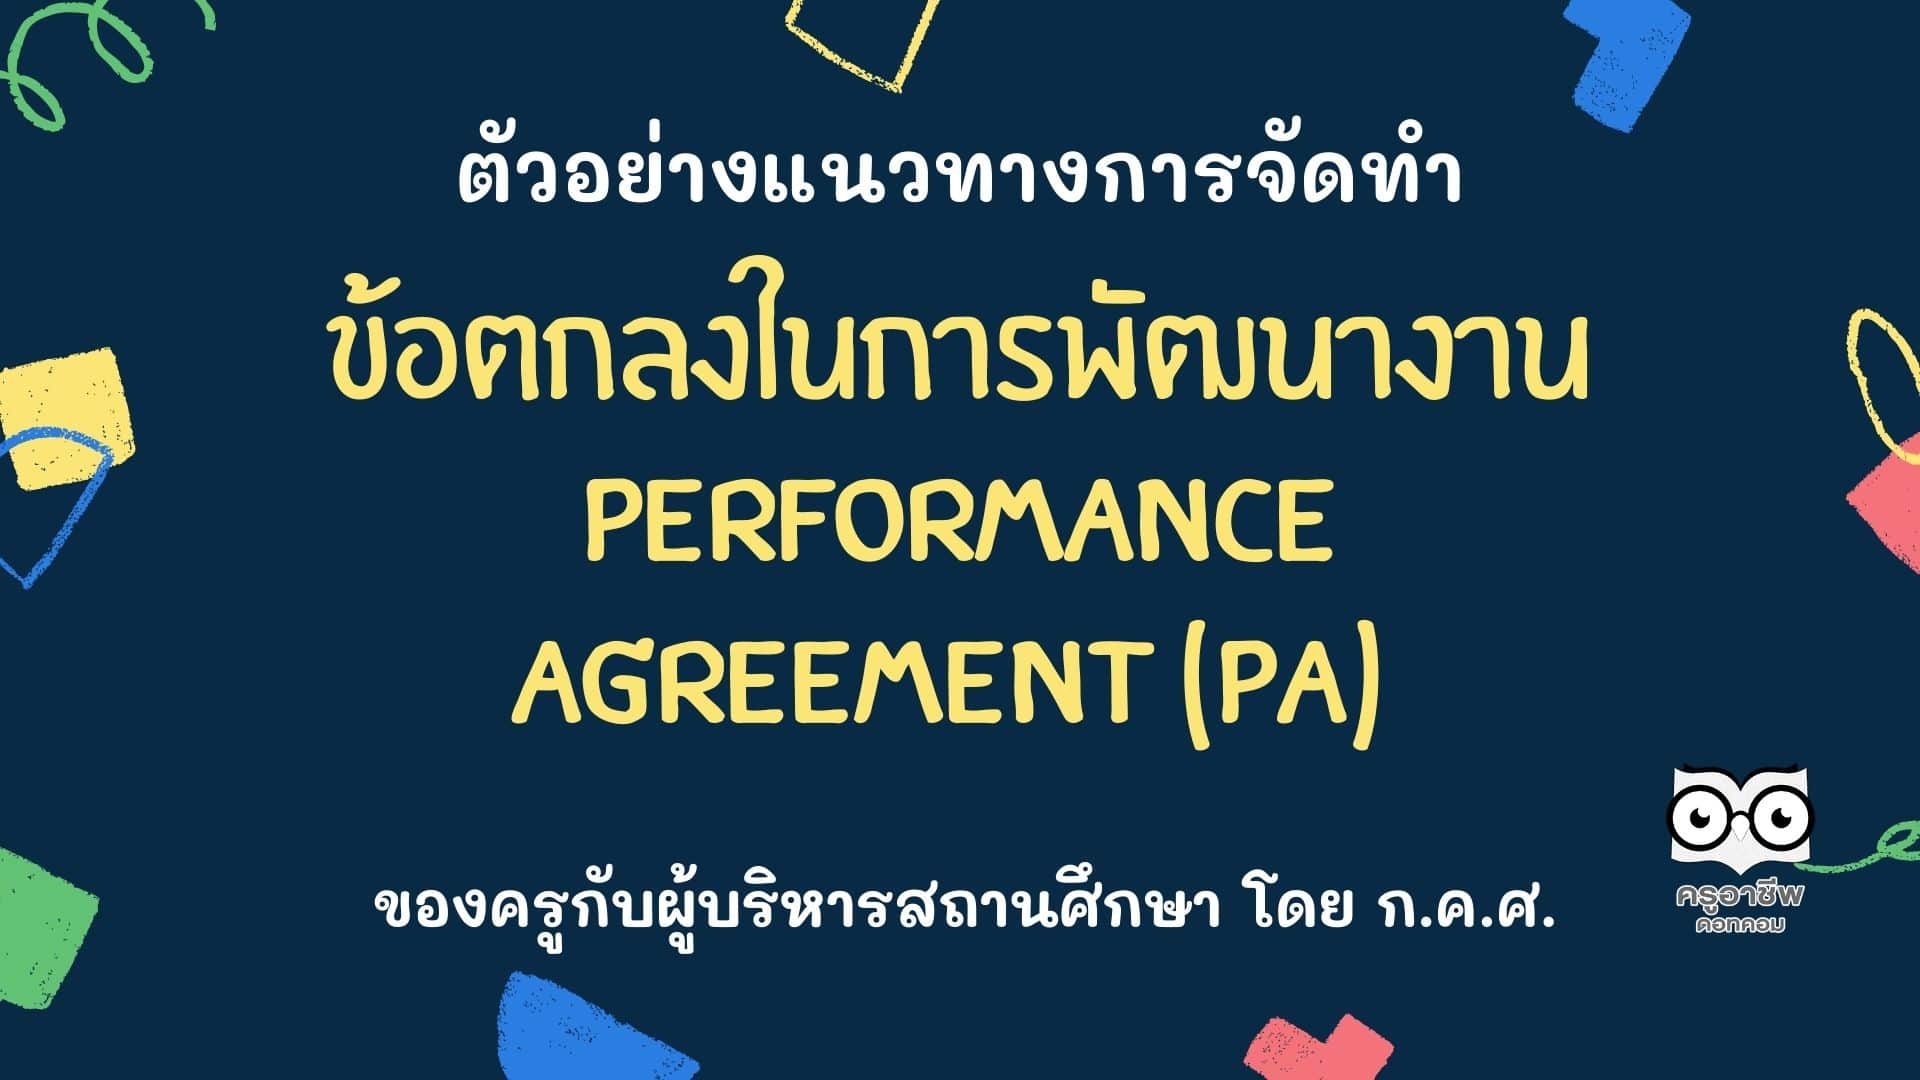 ตัวอย่างแนวทางการจัดทำข้อตกลงในการพัฒนางาน Performance Agreement (PA) ของครูกับผู้บริหารสถานศึกษา โดย ก.ค.ศ.